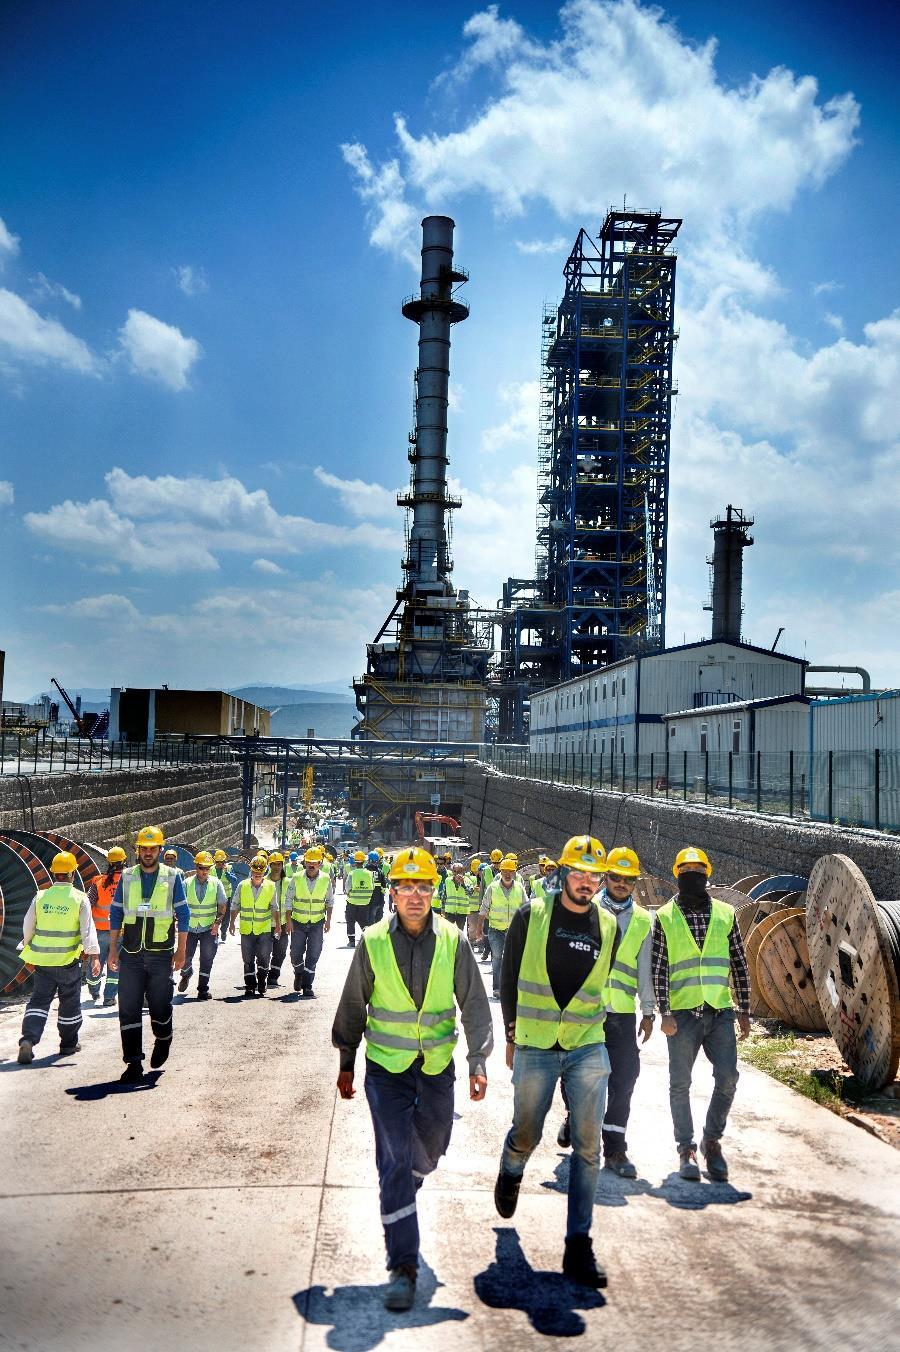 STAR Rafineri Türkiye tarihinde tek noktaya yapılan en büyük yatırım 6 MİLYAR DOLAR Yatırım tutarı 10 MİLYON TON Ham petrol işleme kapasitesi 4,8 MİLYON TON Motorin üretimi 1.